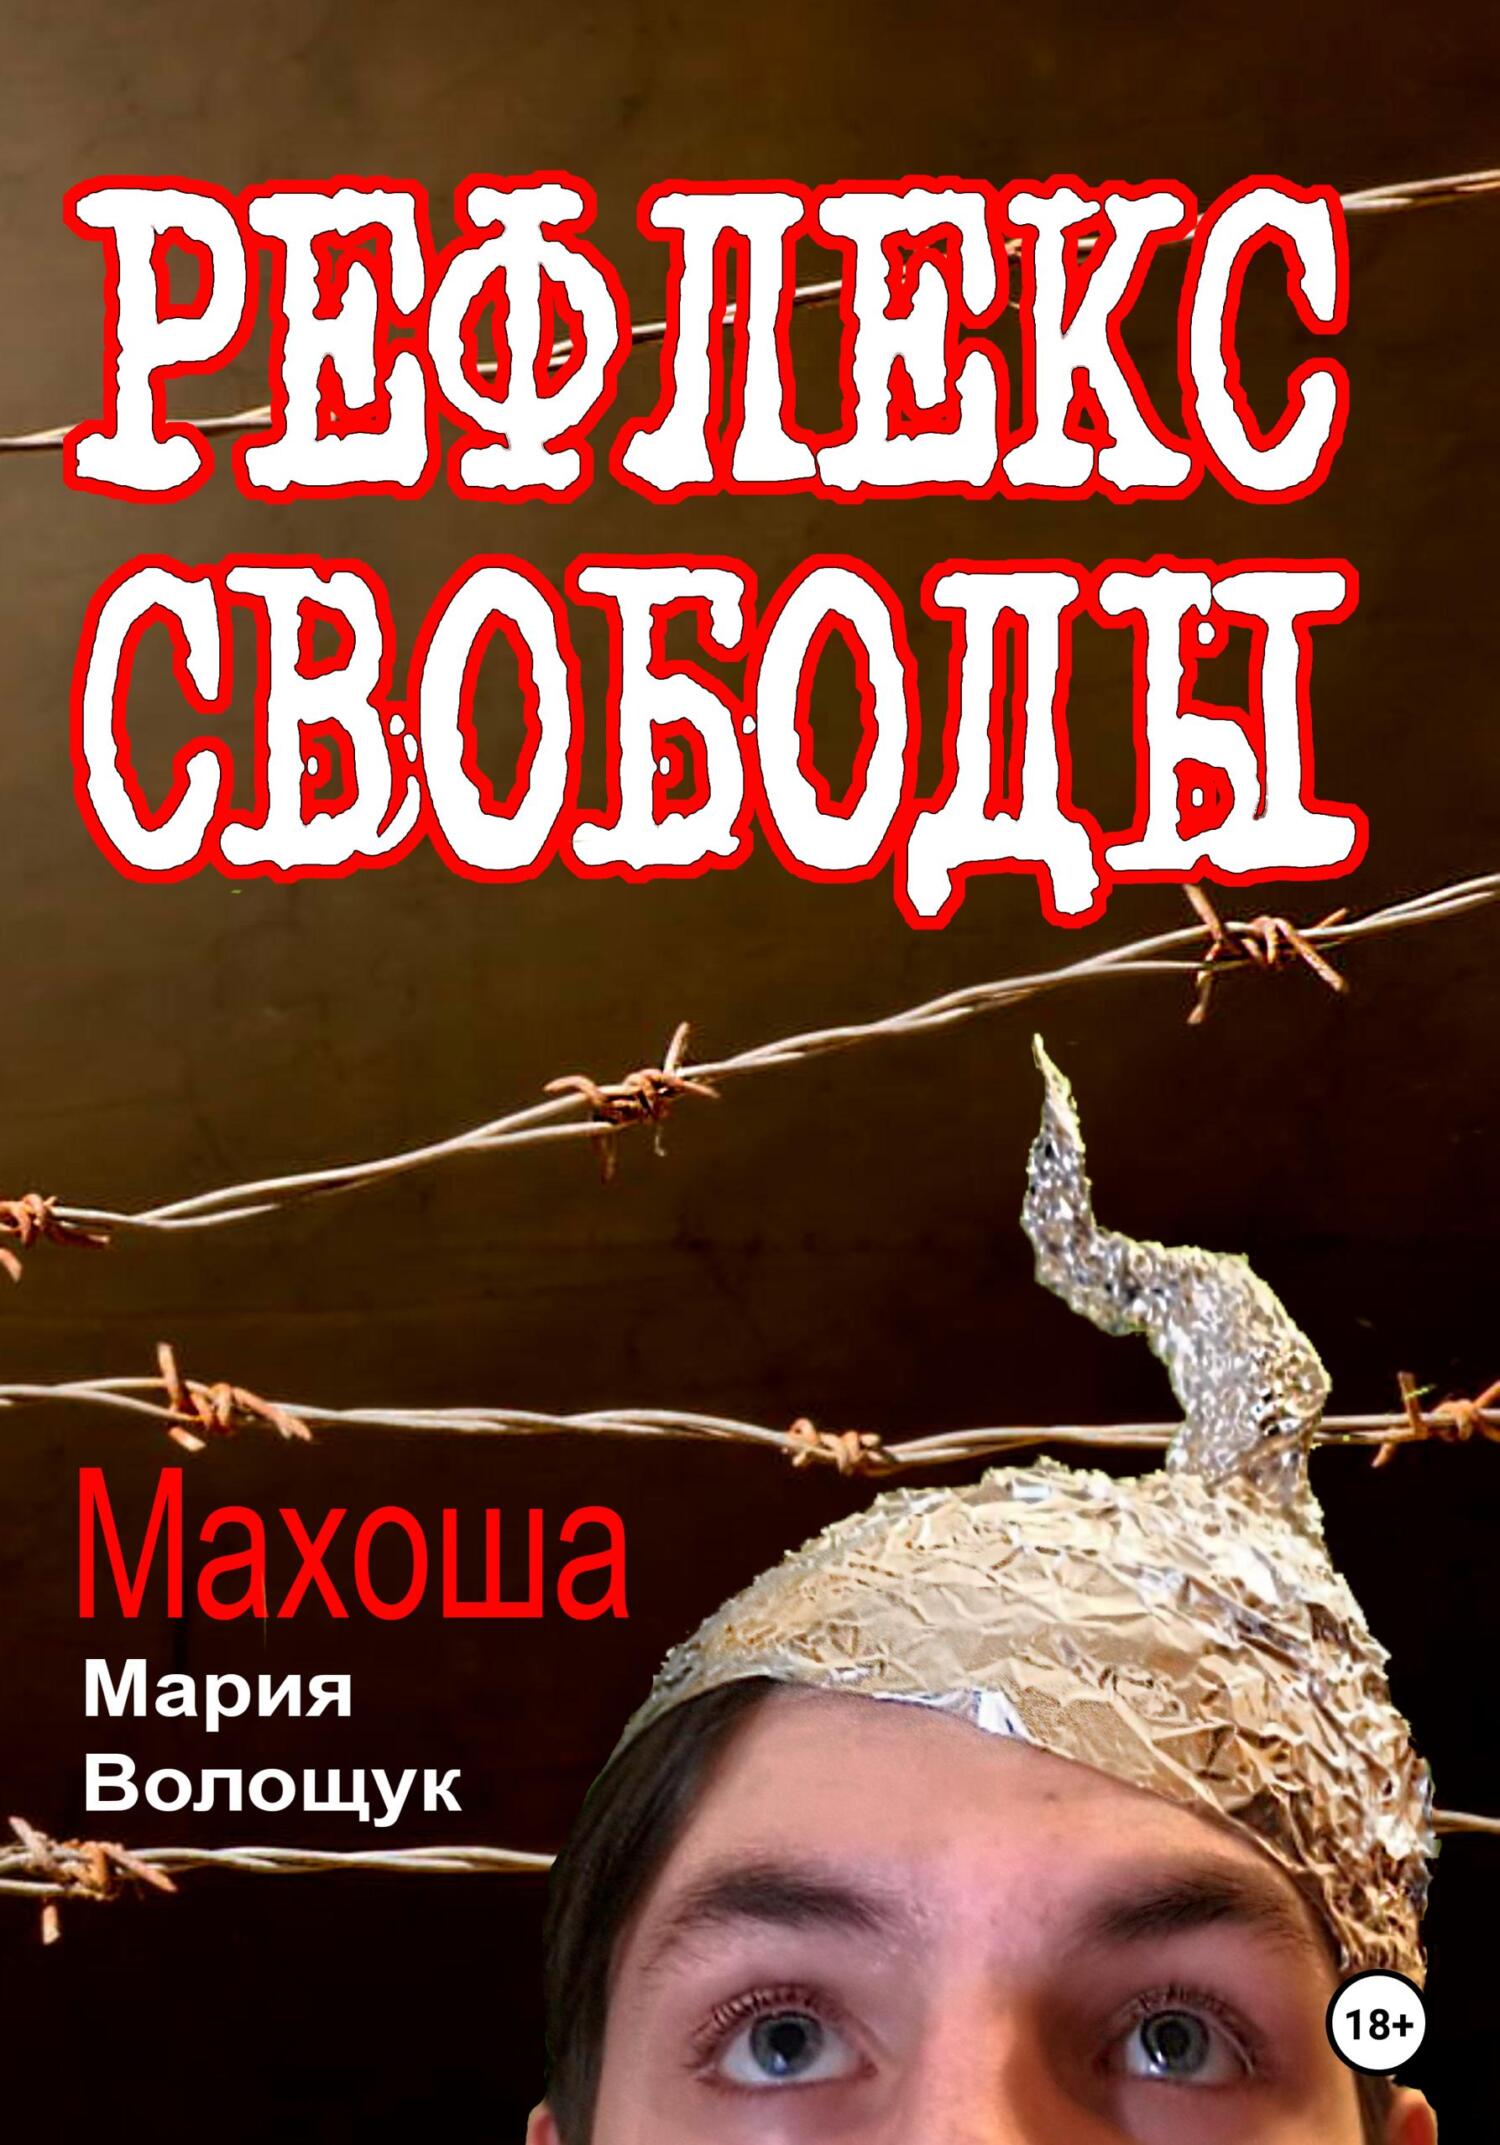 Рефлекс свободы - Мария Волощук Махоша